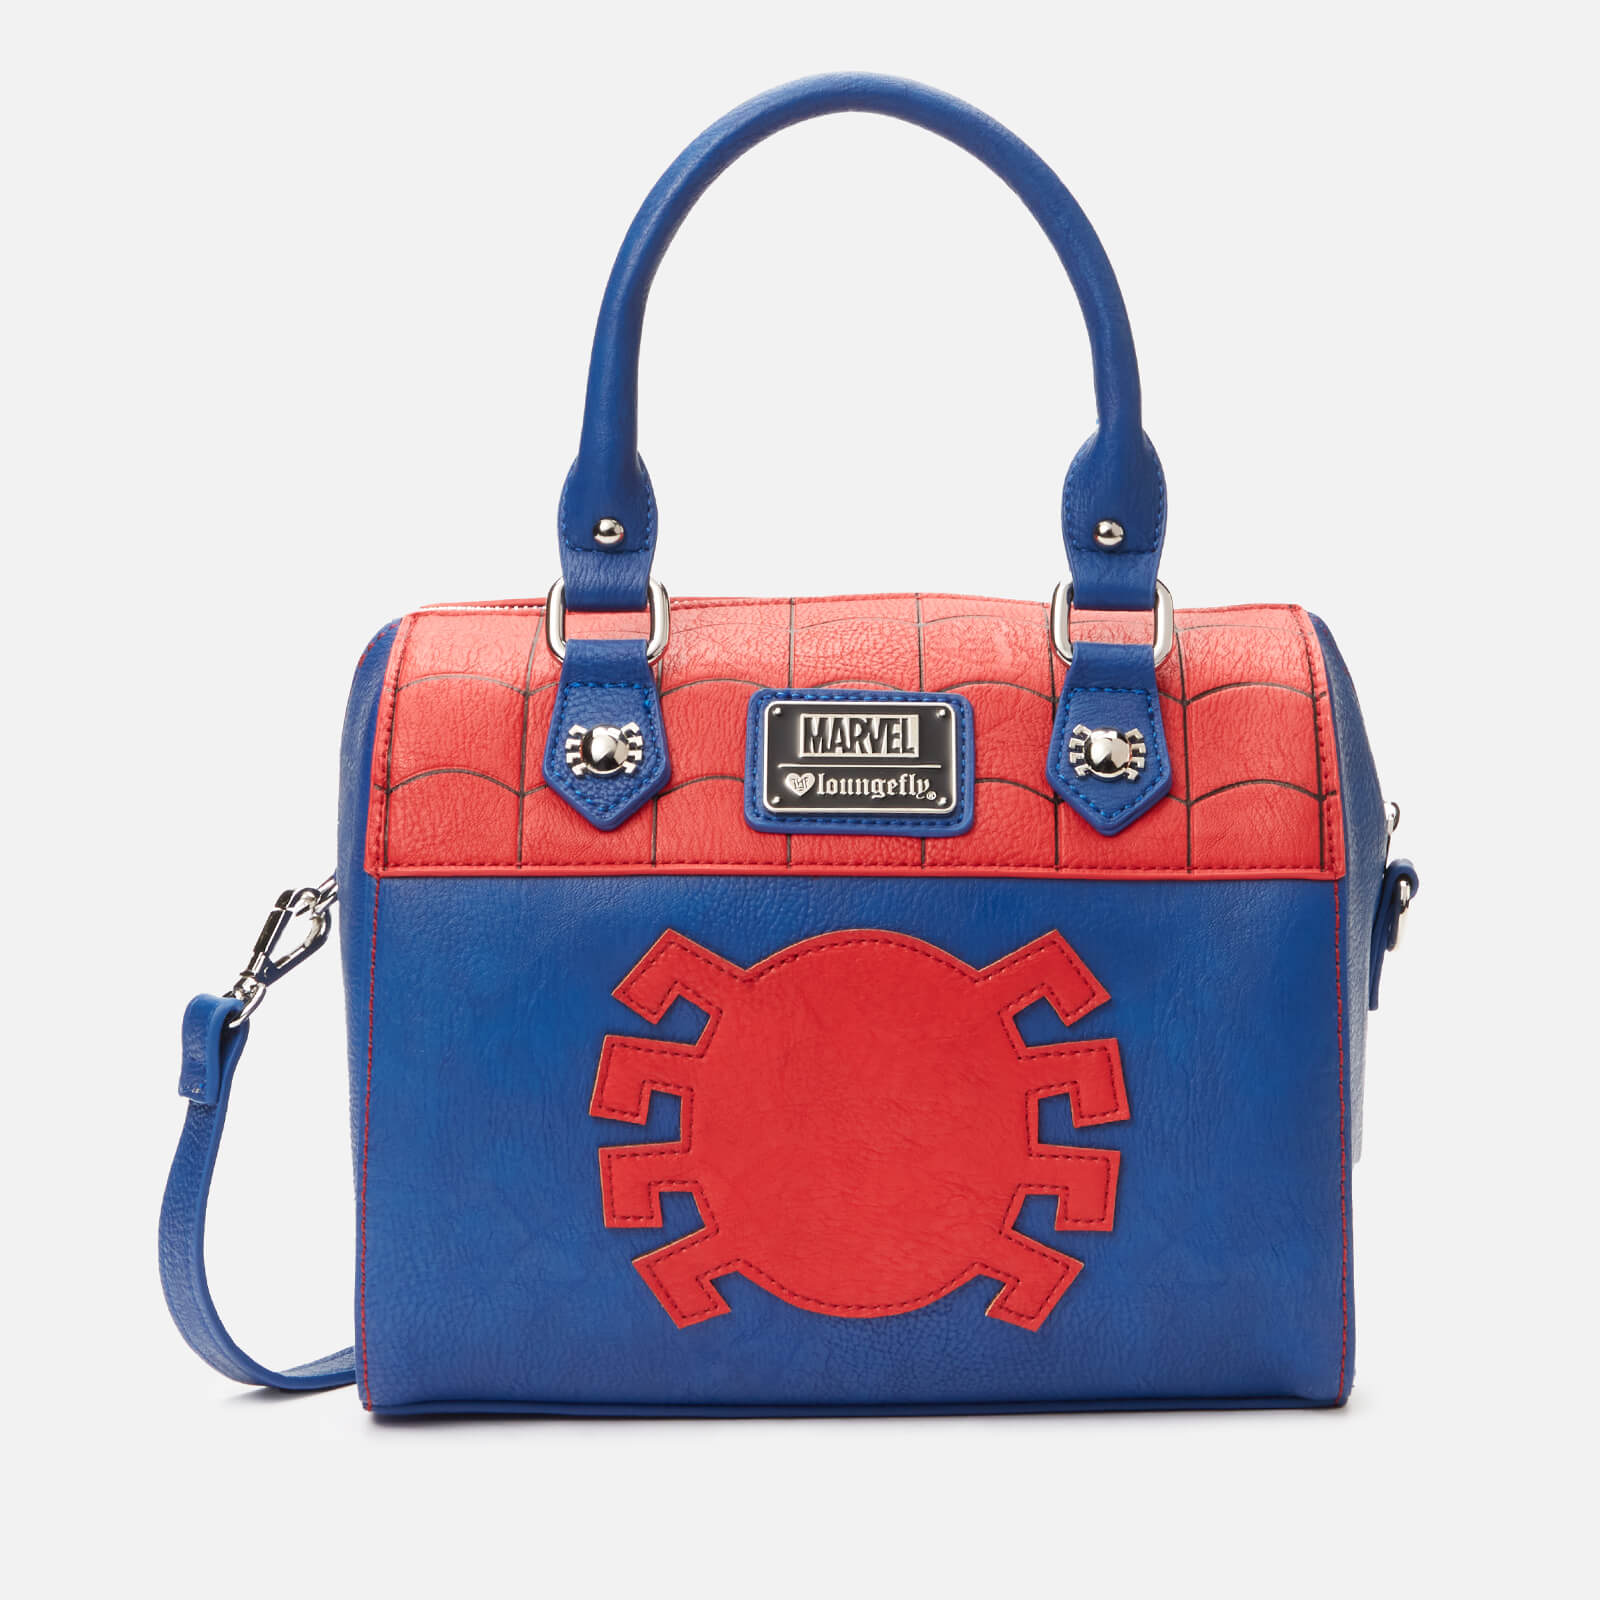 Loungefly Marvel Spider-Man Handbag